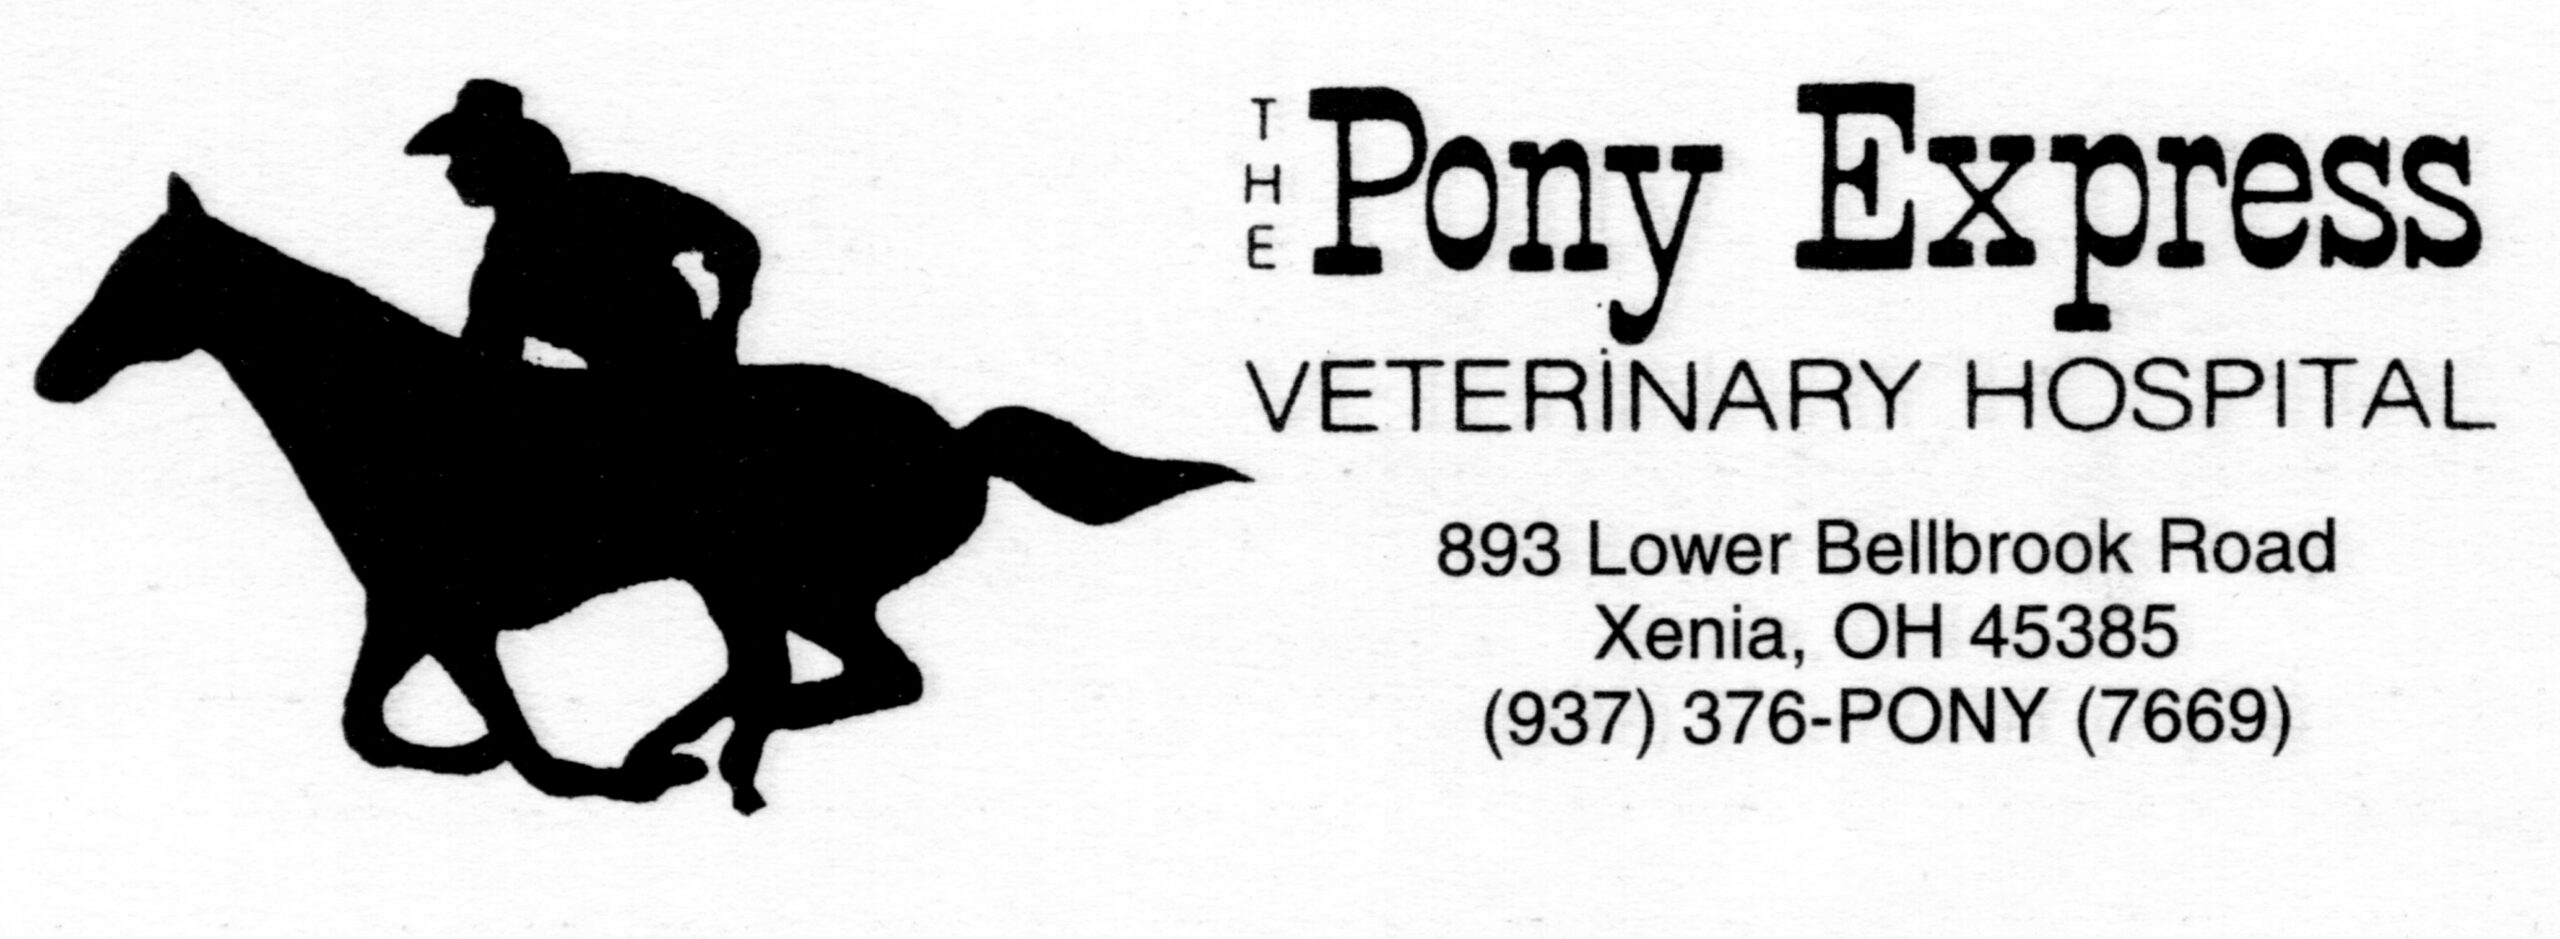 The Pony Express Veterinary Hospital